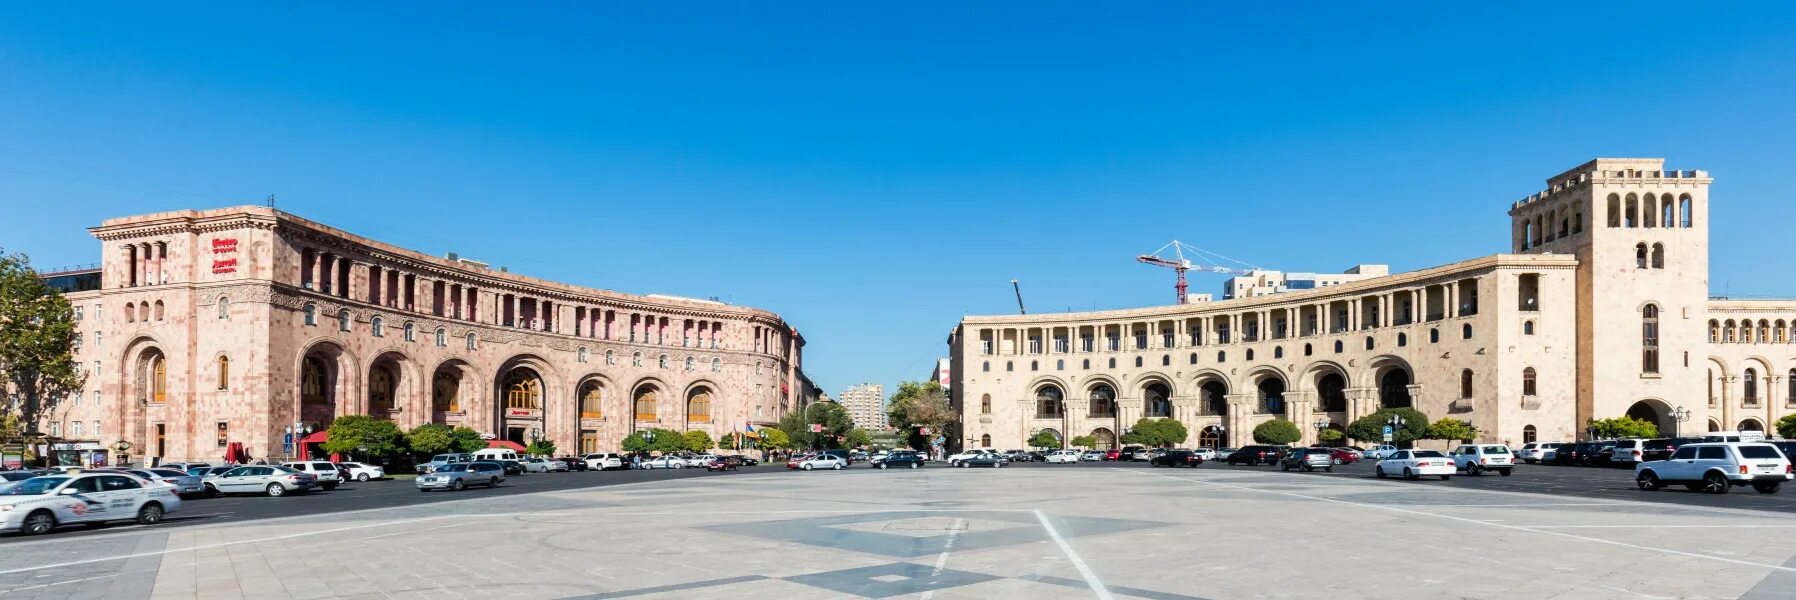 Дог ереван. Площадь Республики Ереван. Площадь Republic Square Ереван. Армения Ереван площадь Республики. Центральная площадь Еревана.